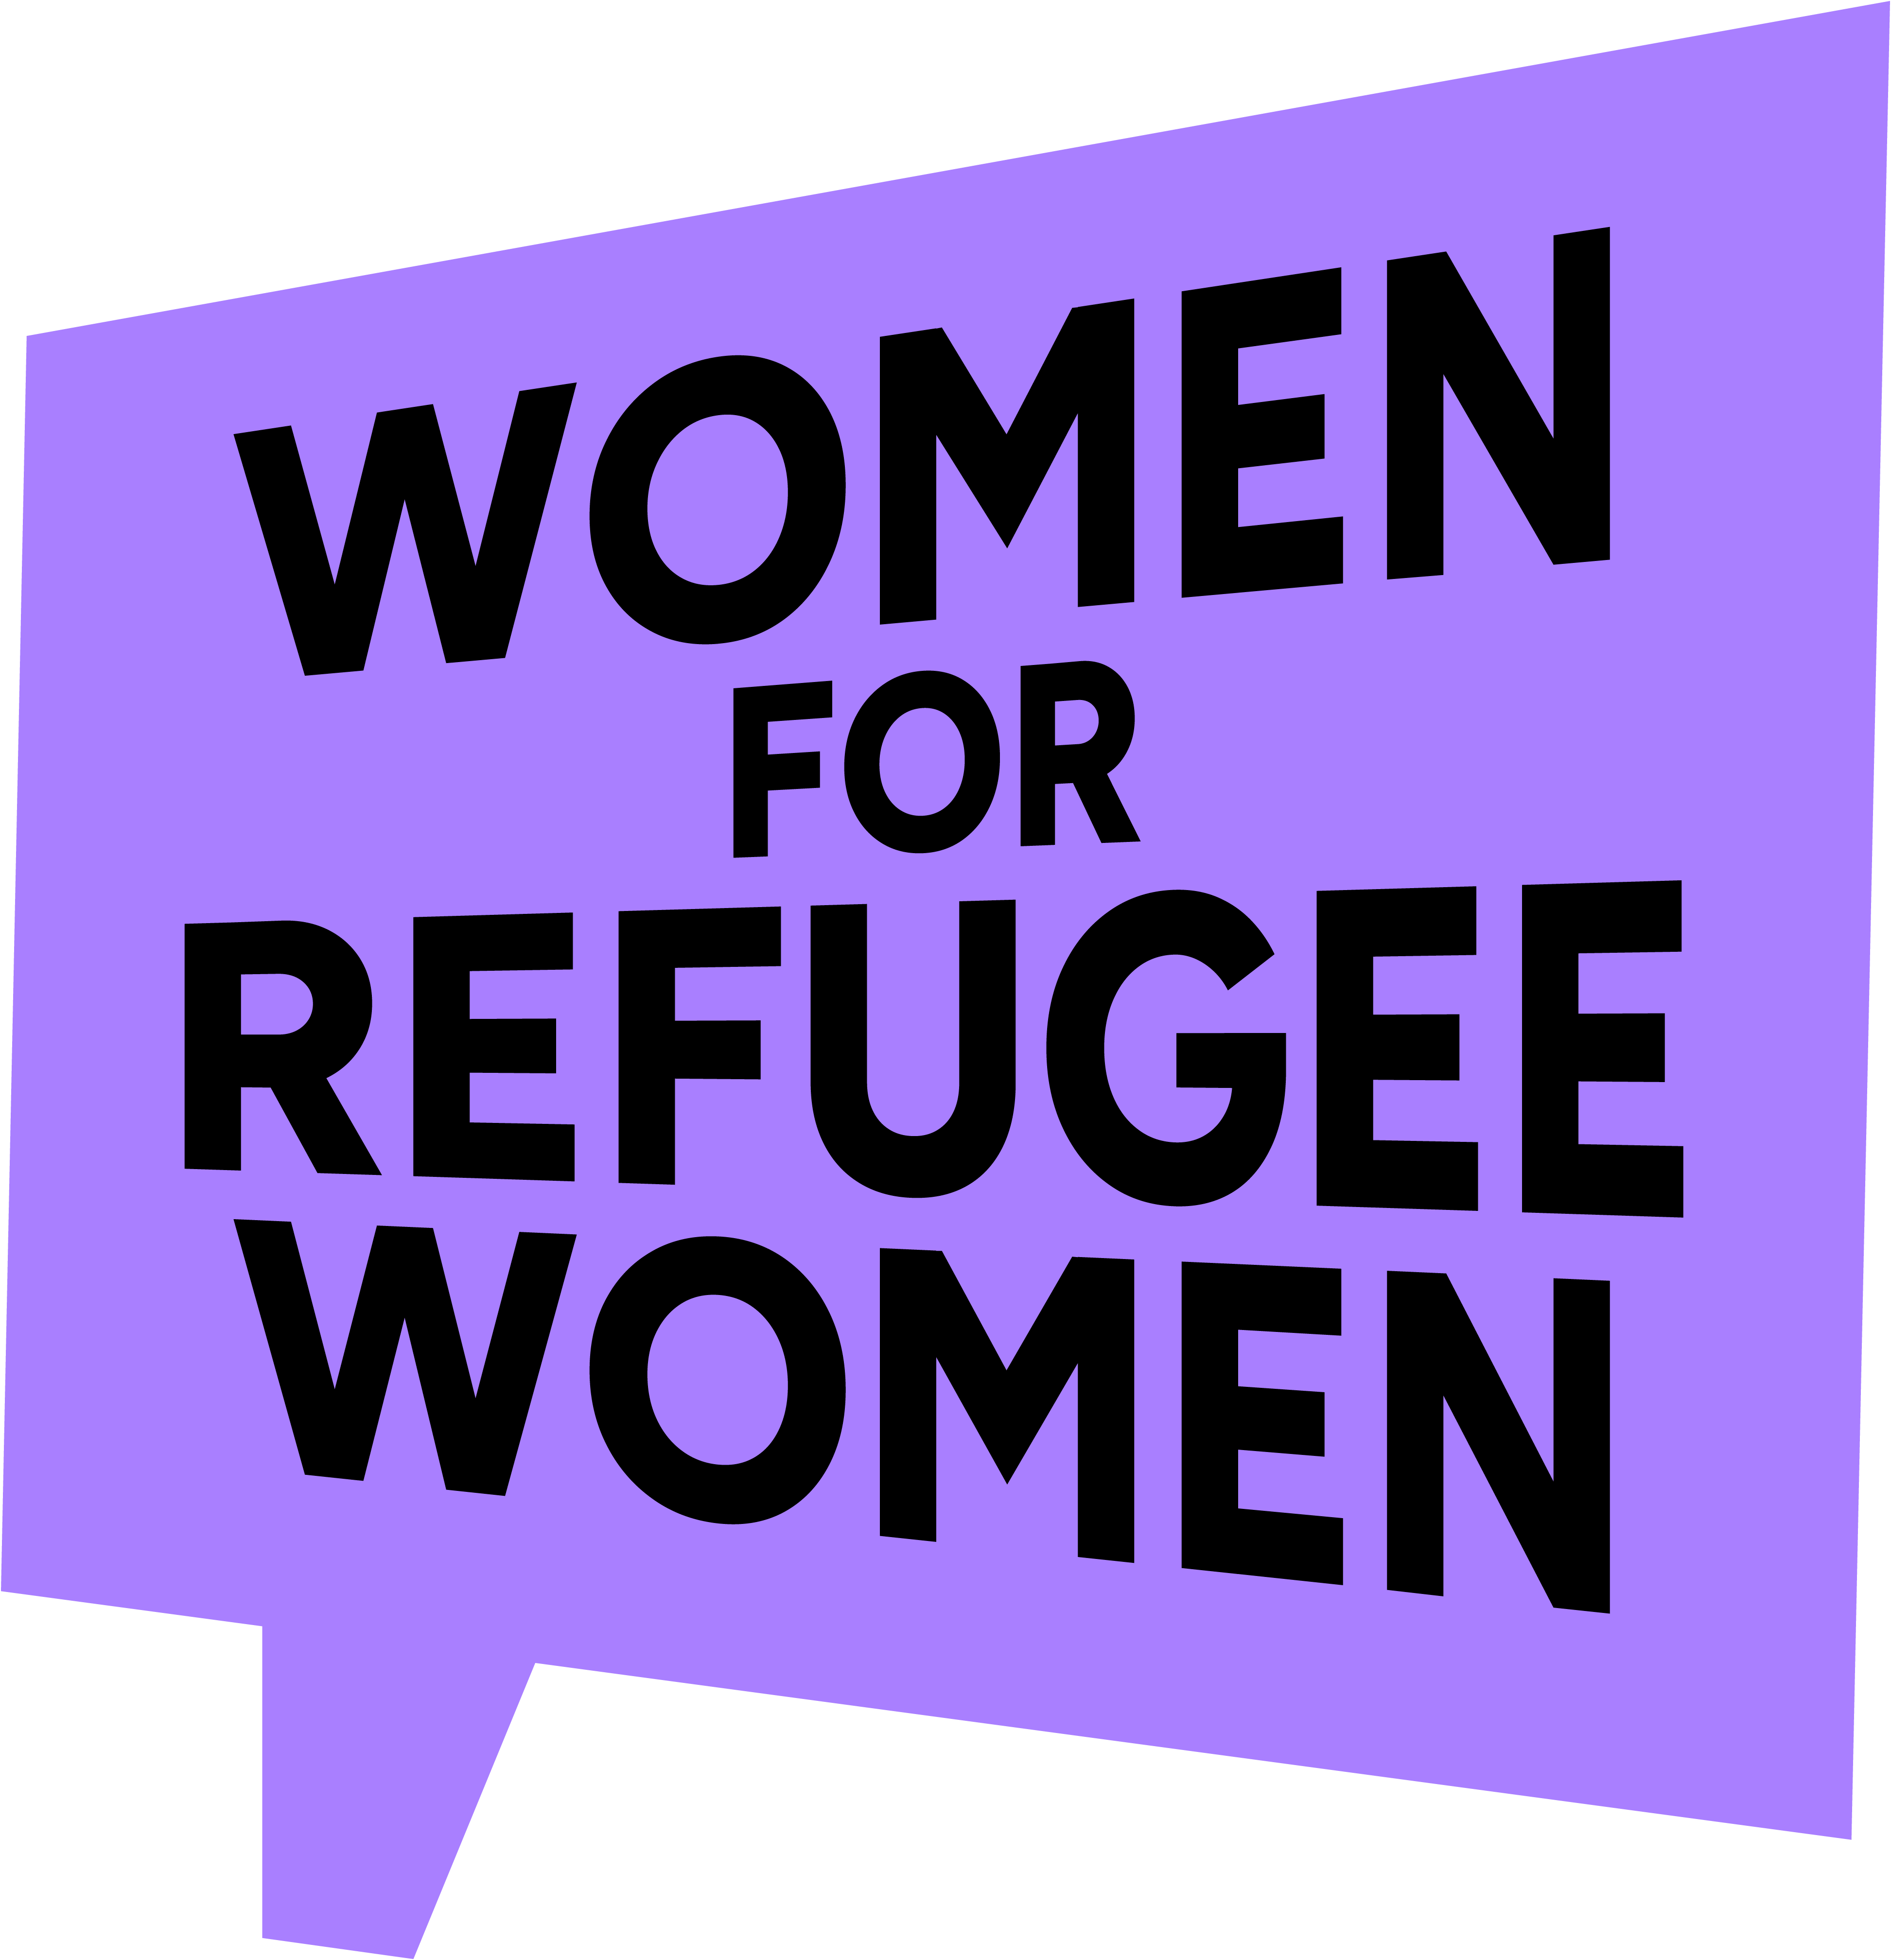 Women for Refugee Women logo.  